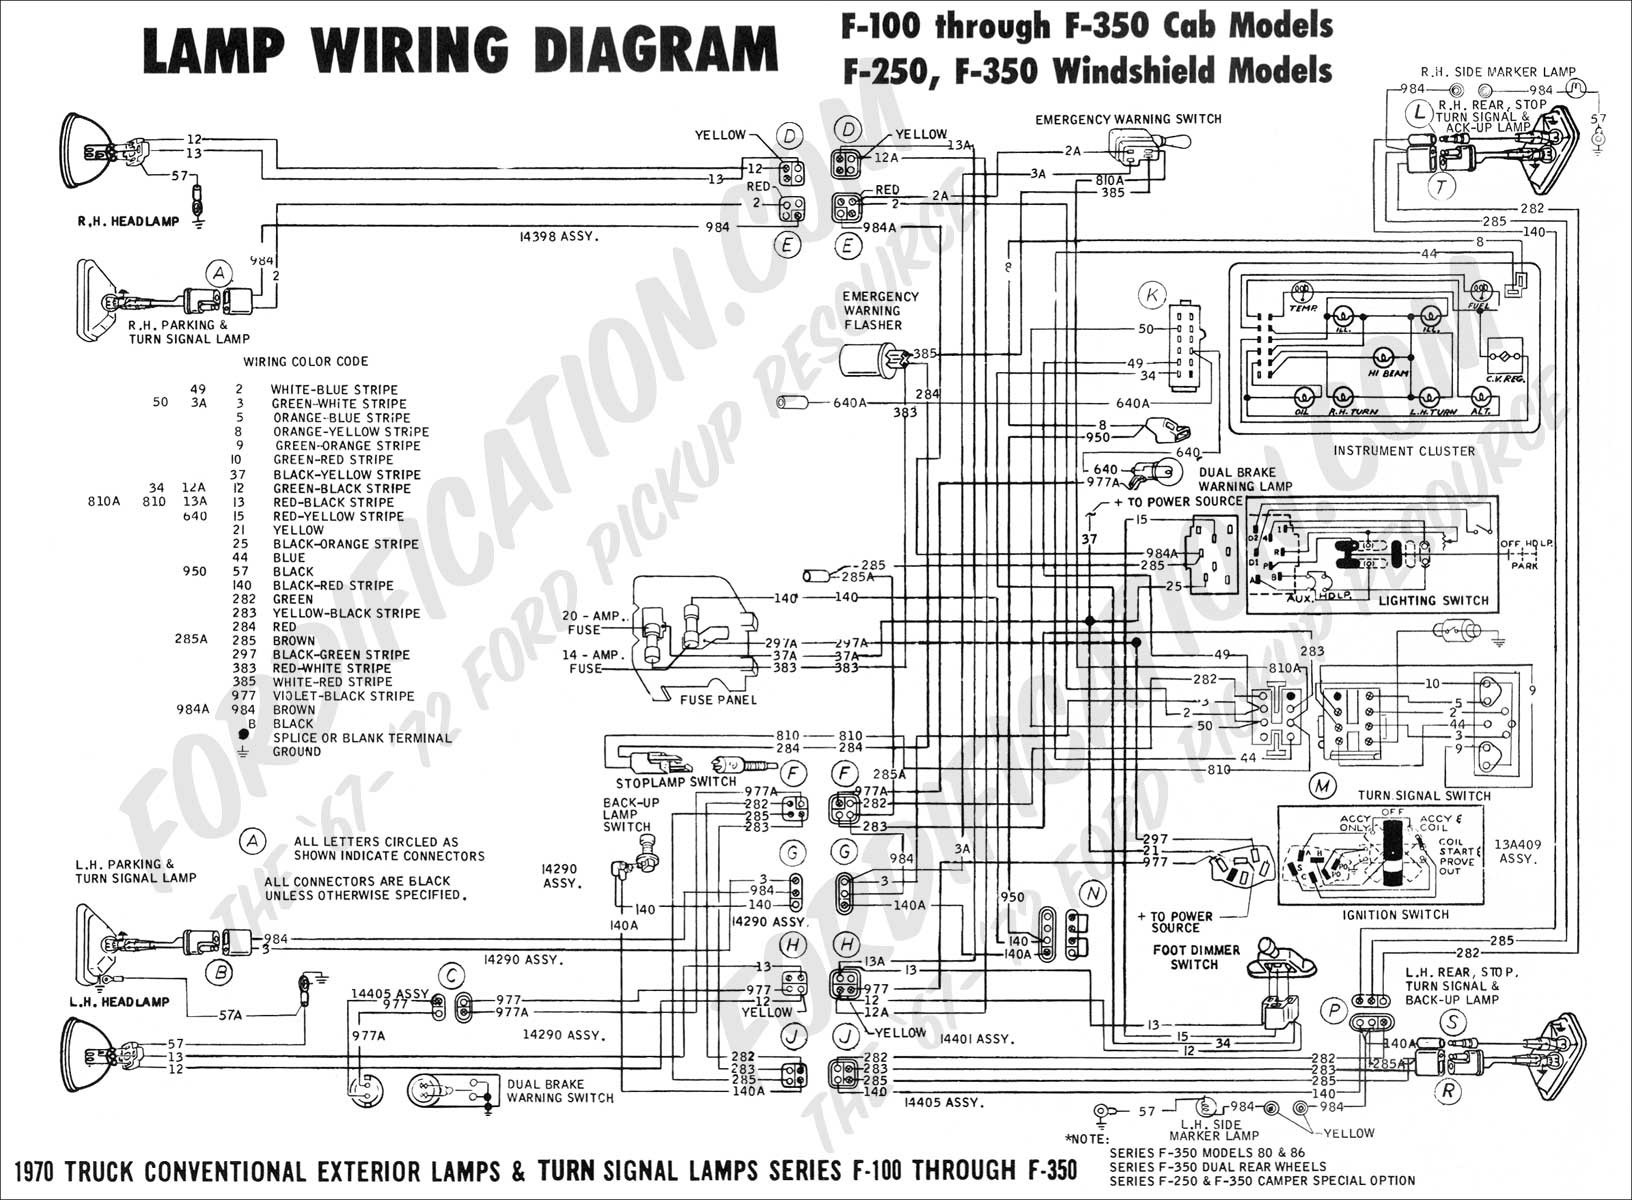 1986 ford F150 Under Hood Diagram 58eb532 F150 Alternator Warning Light Wiring Diagram Of 1986 ford F150 Under Hood Diagram